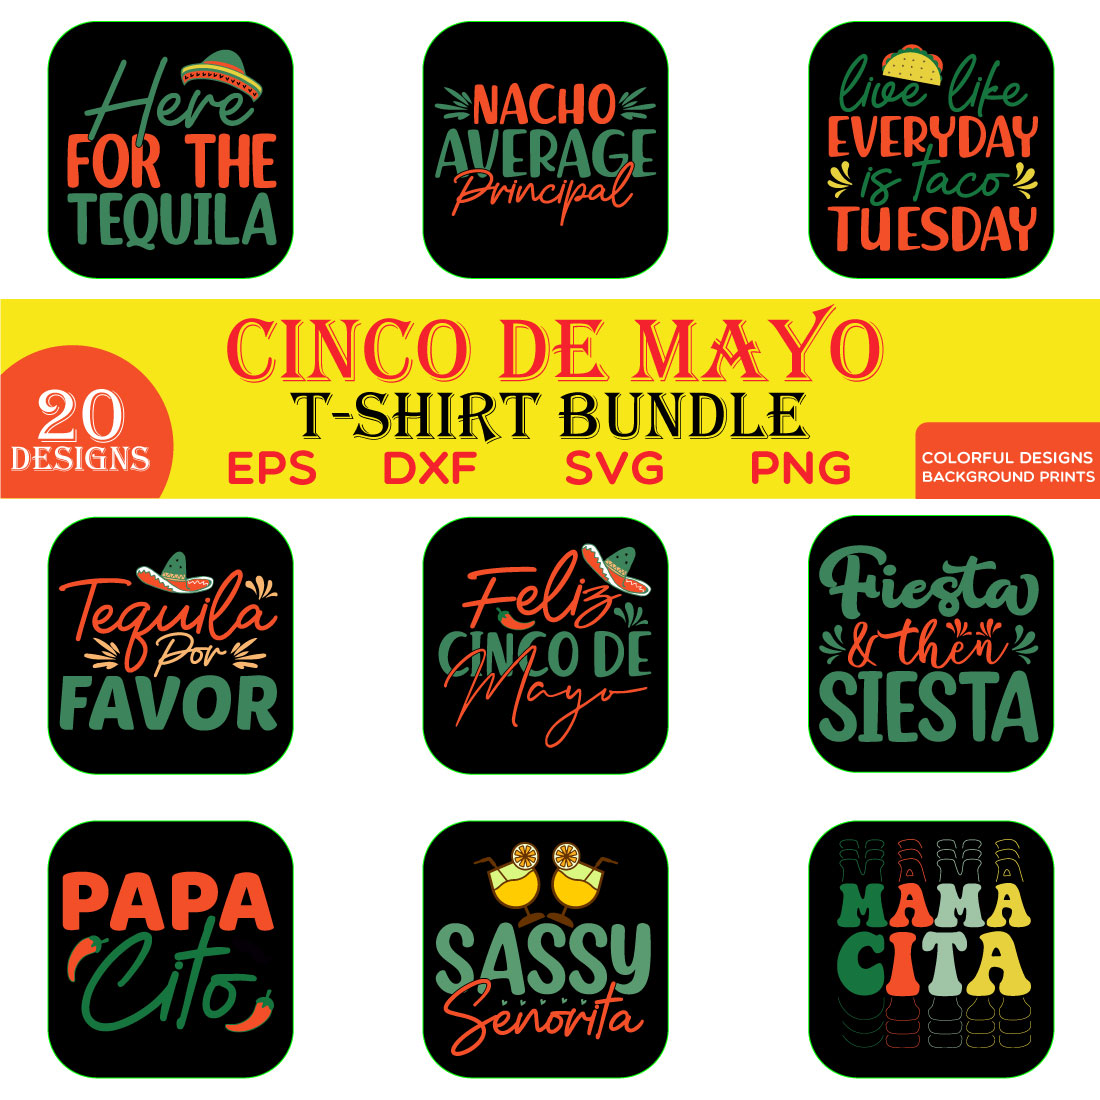 Cinco De Mayo T-shirt Bundle preview image.